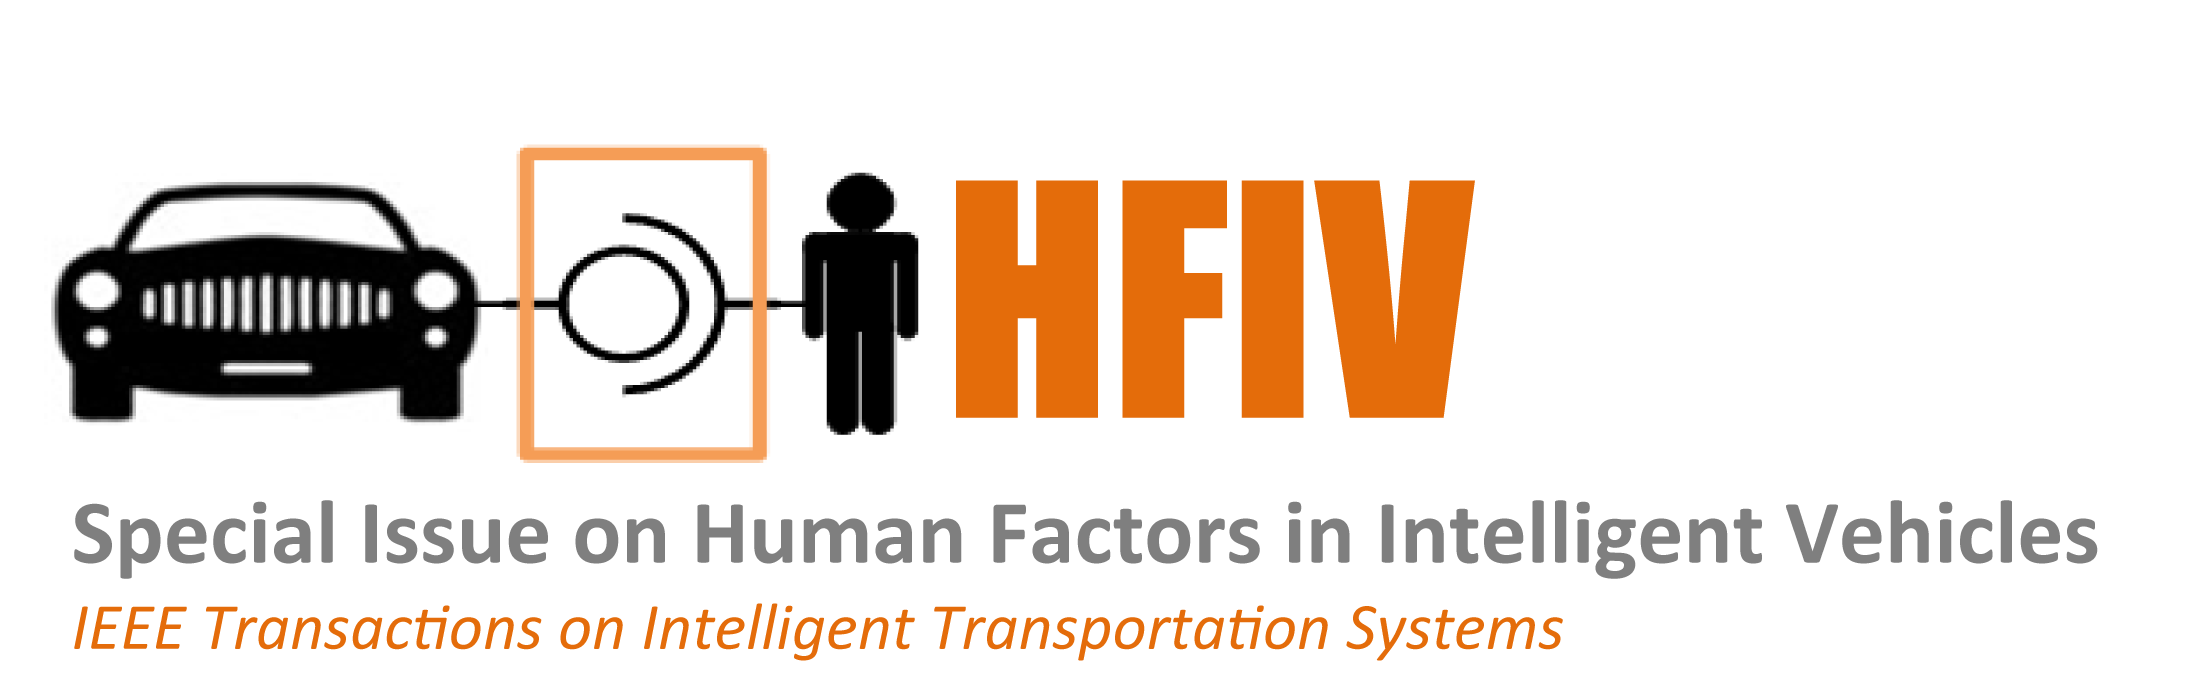 HFIV logo